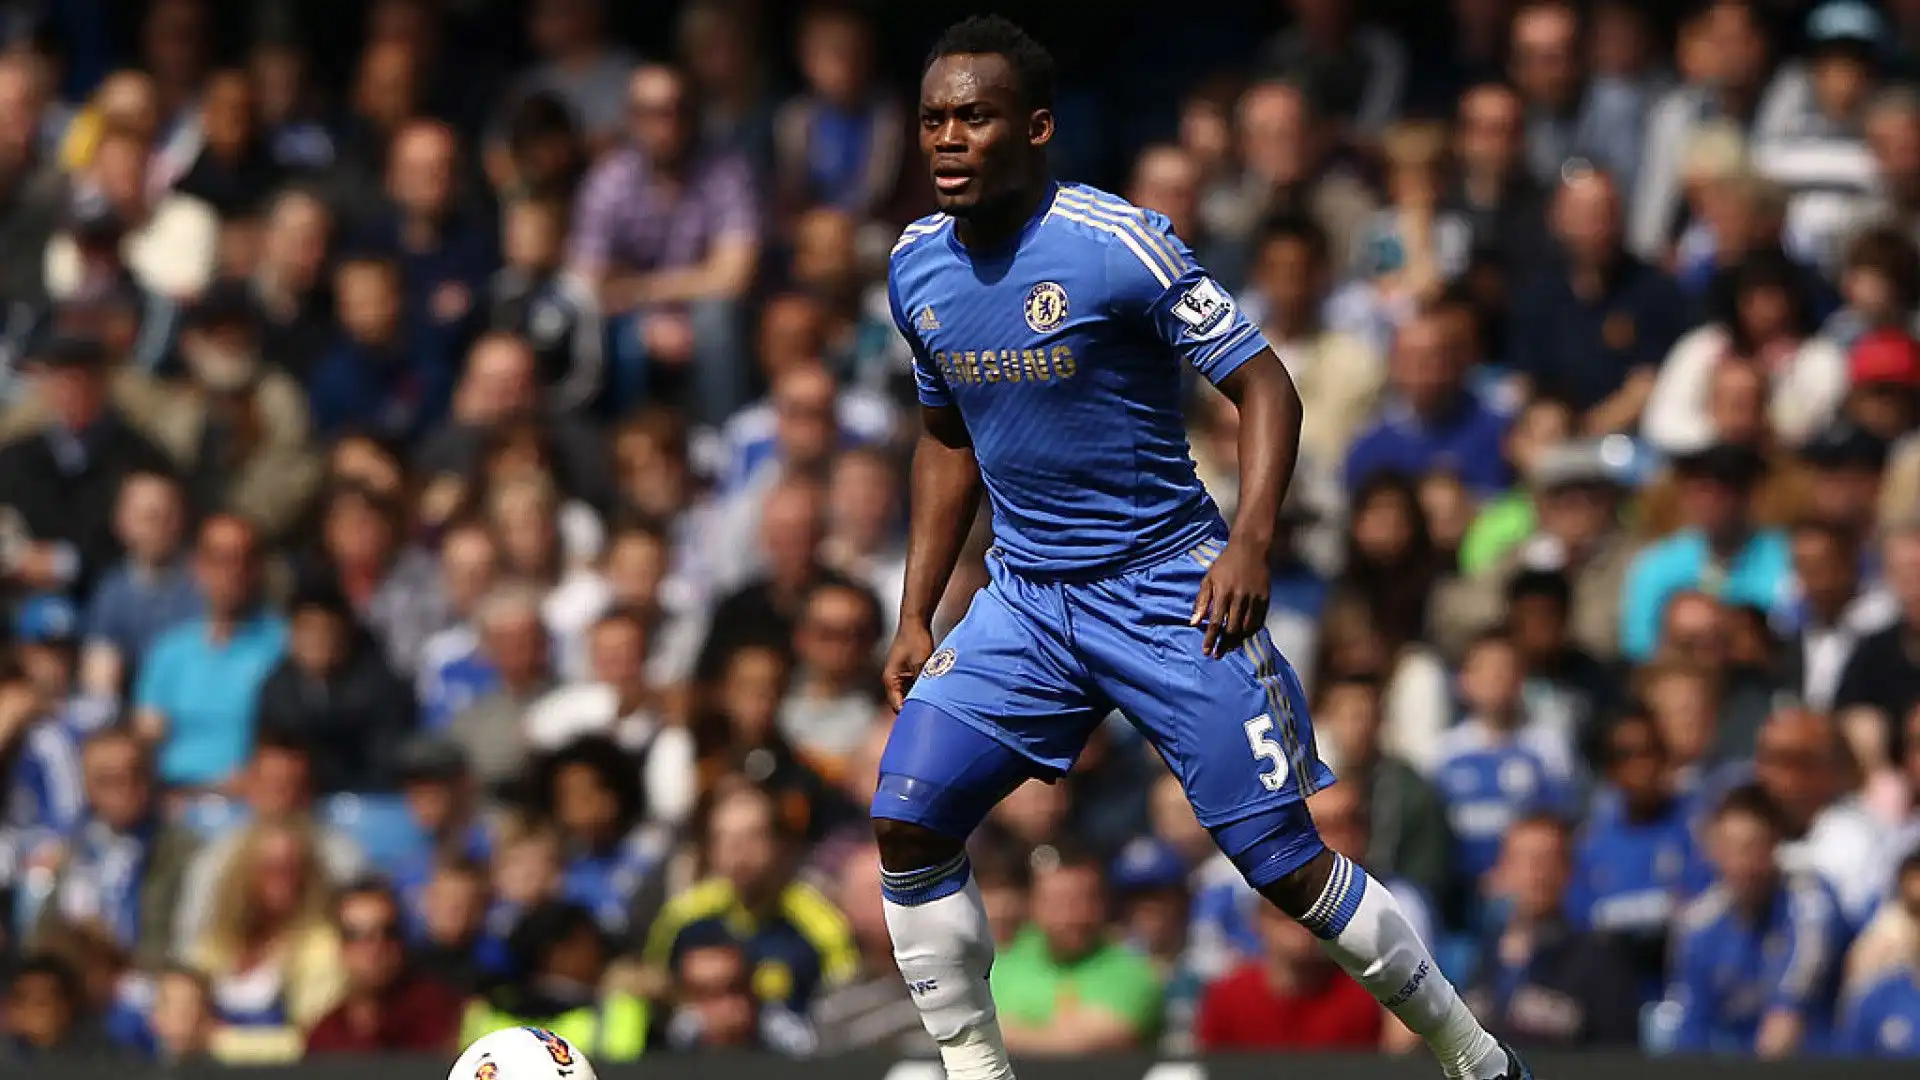 Con il Chelsea, invece ha giocato dal 2005 al 2012 e dal 2013 al 2014